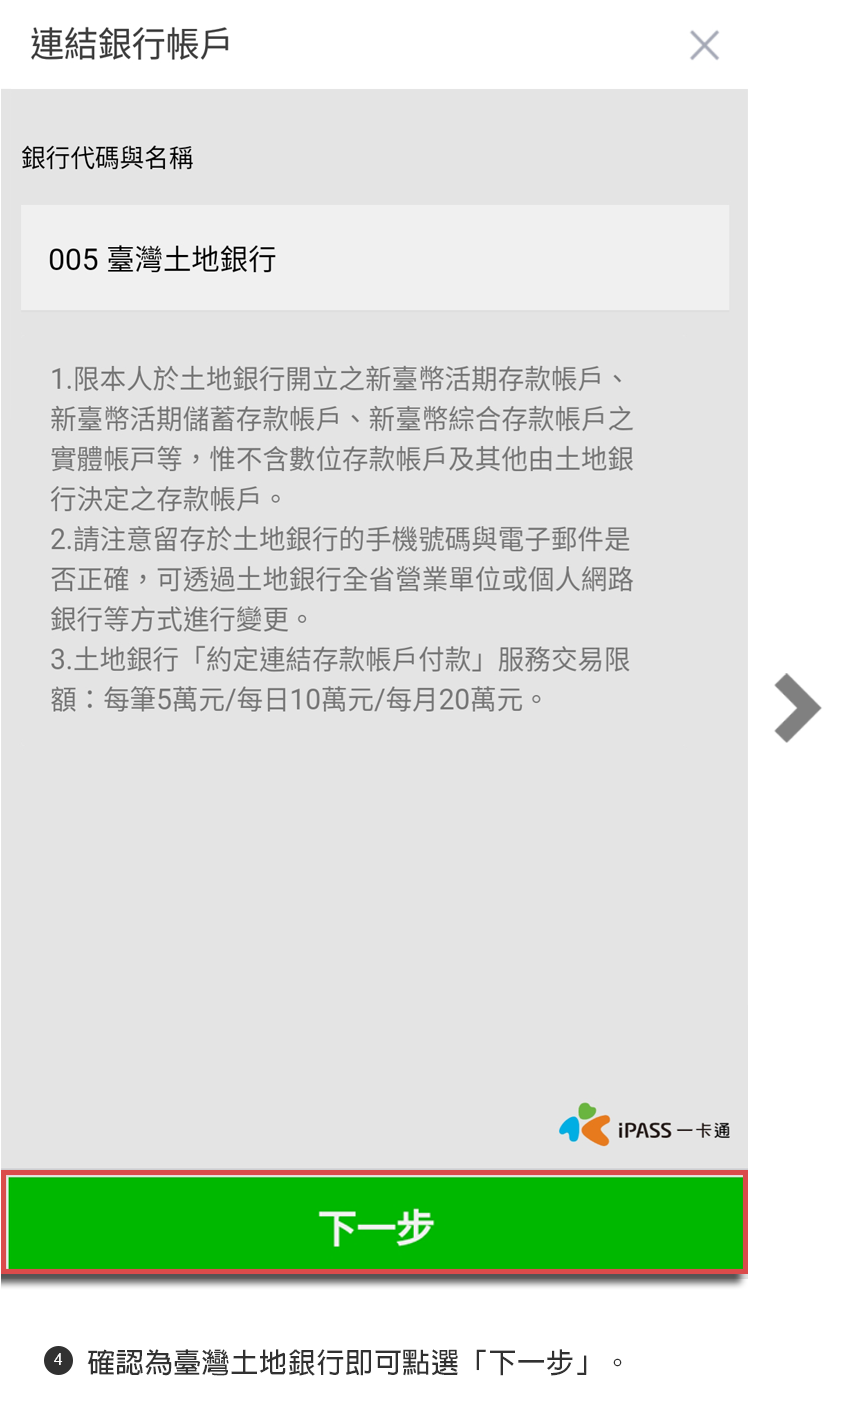 步驟4確認為臺灣土地銀行即可點選「下一步」